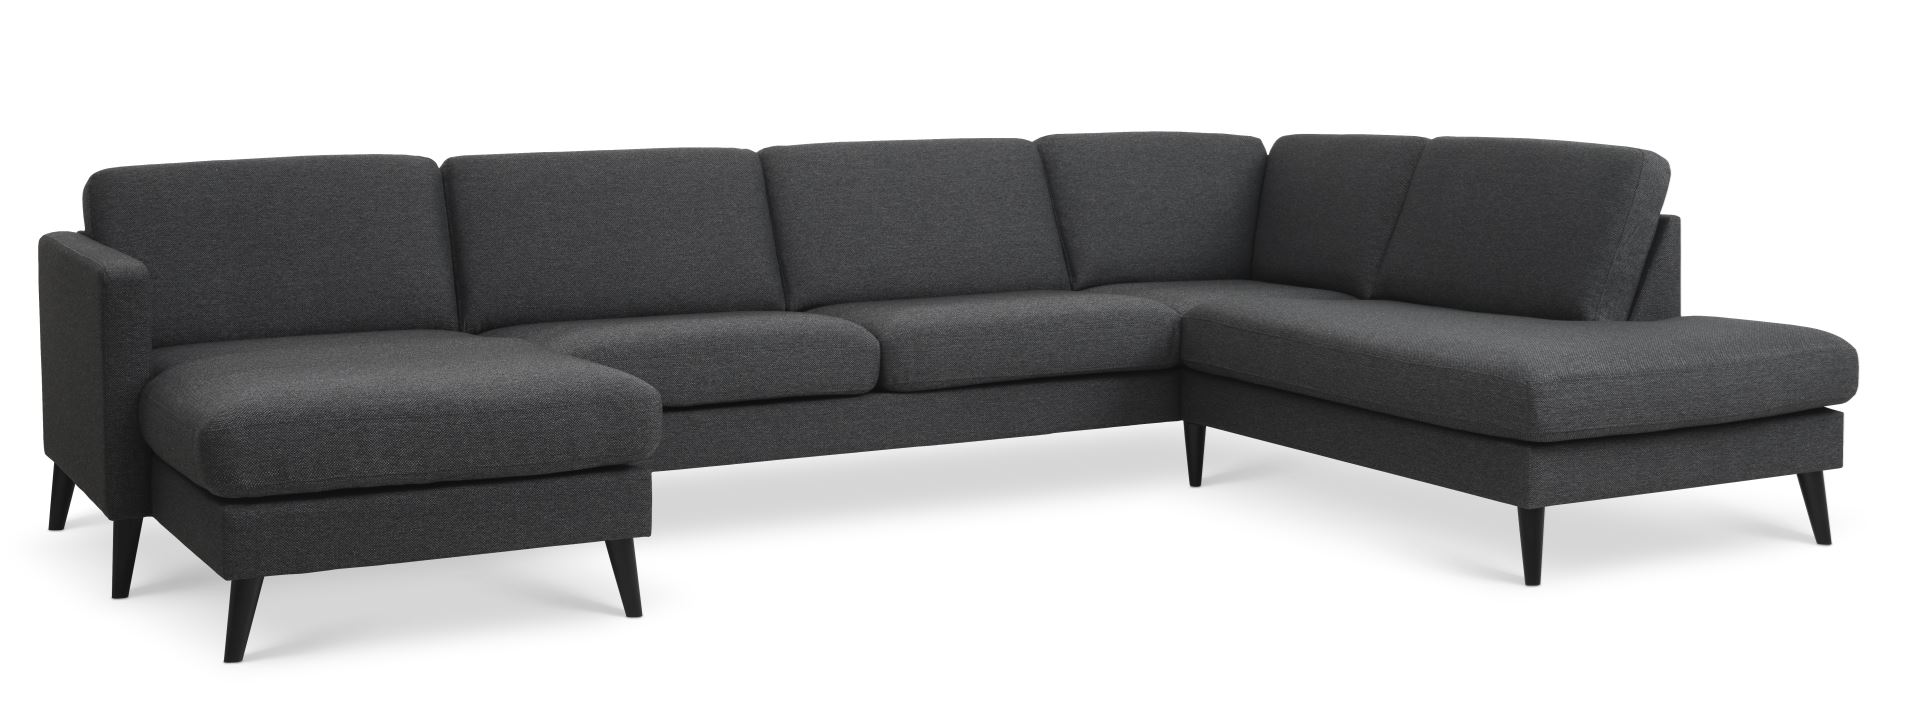 Ask sæt 55 U OE sofa, m. højre chaiselong - antracitgrå polyester stof og sort træ